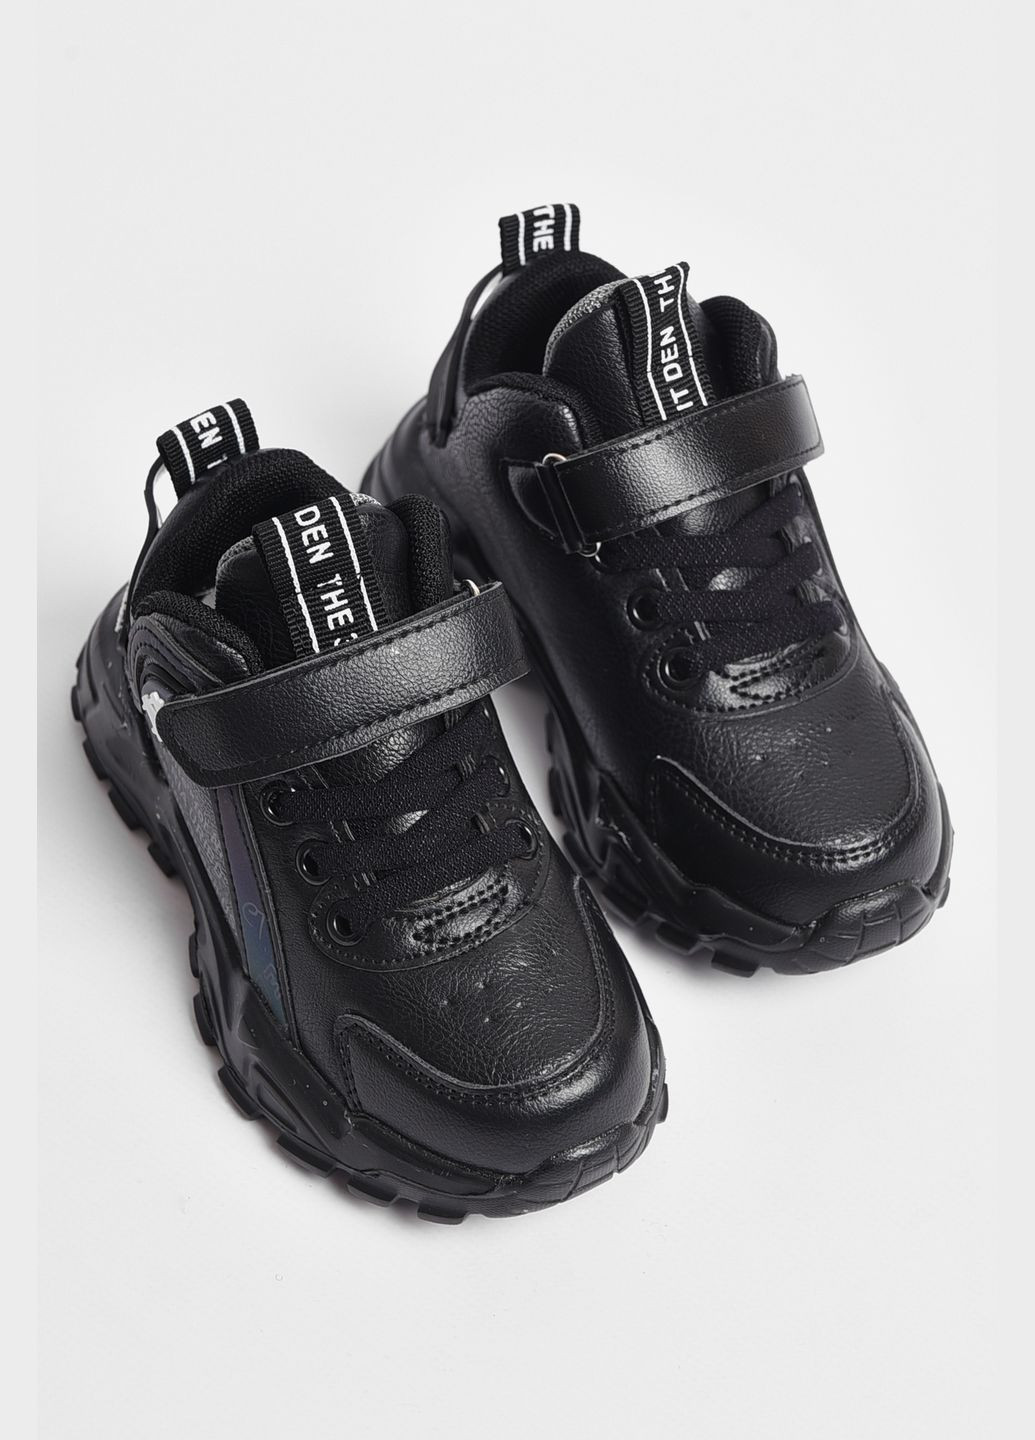 Черные демисезонные кроссовки для мальчика черного цвета Let's Shop